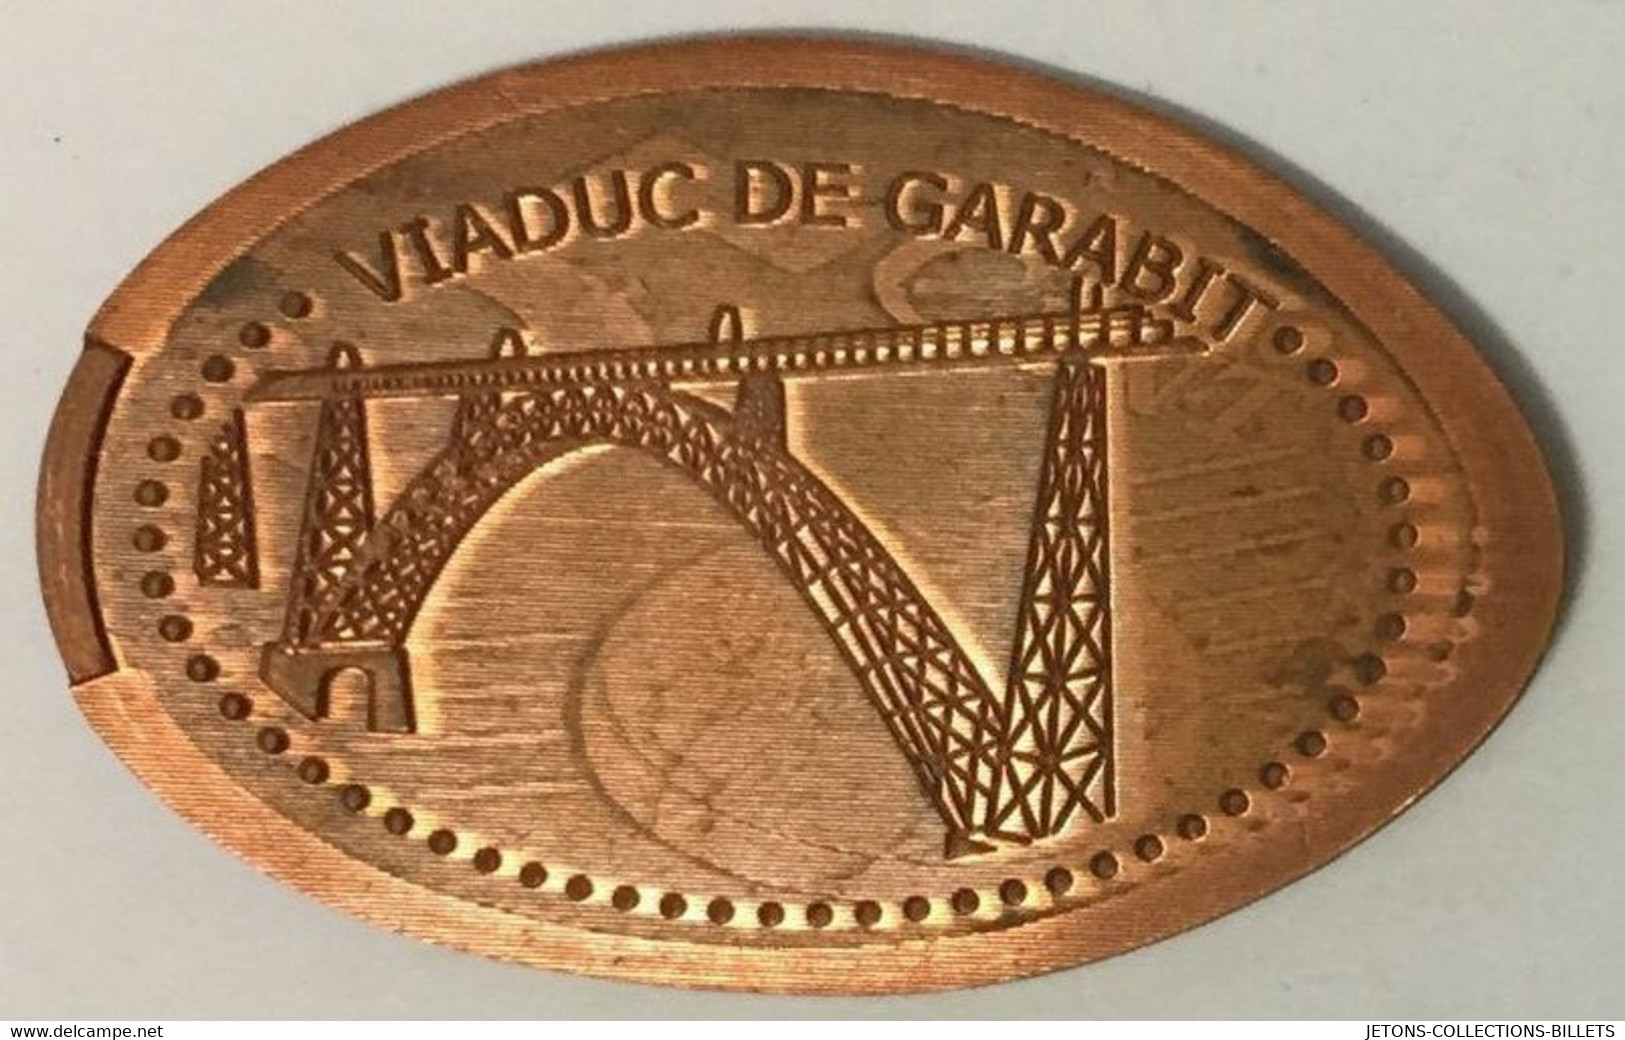 15 VIADUC DE GARABIT CONSTRUCTION PENNY ELONGATED COINS 1 PIÈCE ÉCRASÉE TOURISTIQUE MEDALS TOKENS MONNAIE - Monete Allungate (penny Souvenirs)